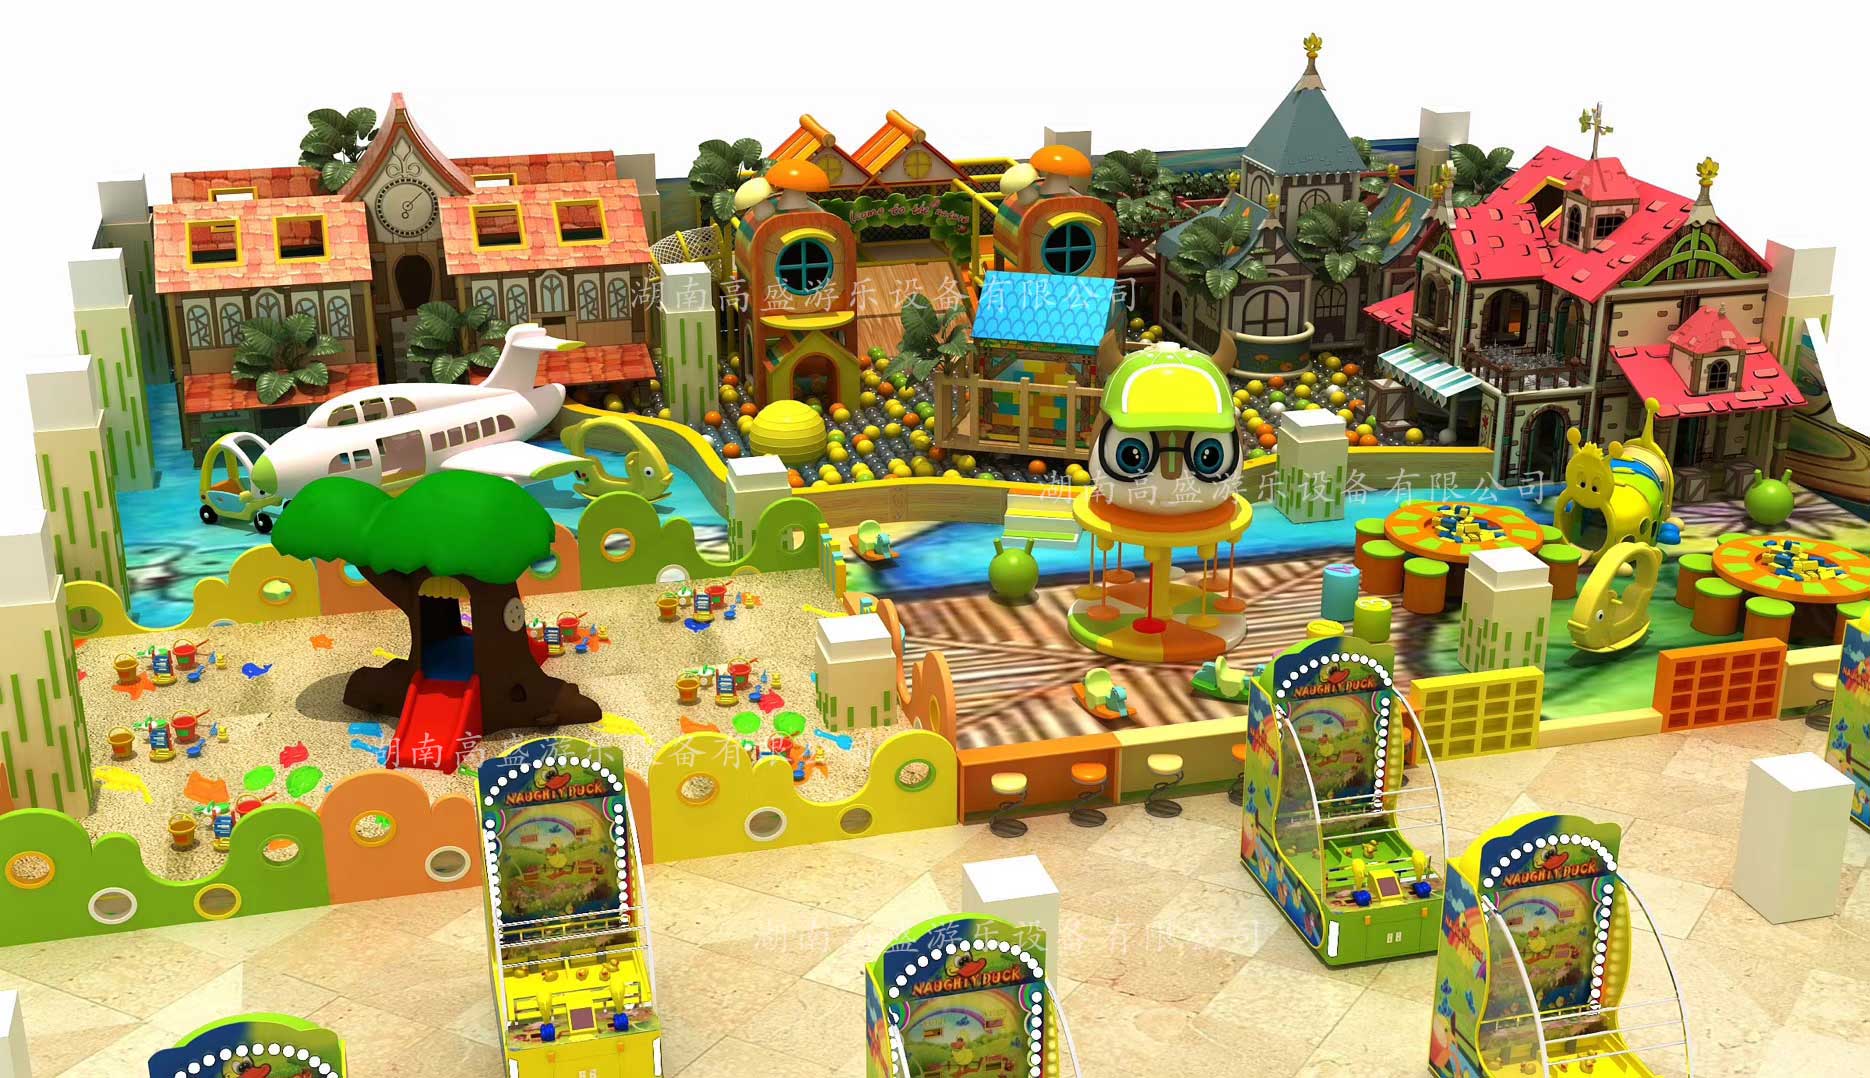 长沙儿童乐园生产厂家,游乐园设备,室内儿童乐园,游乐场设施